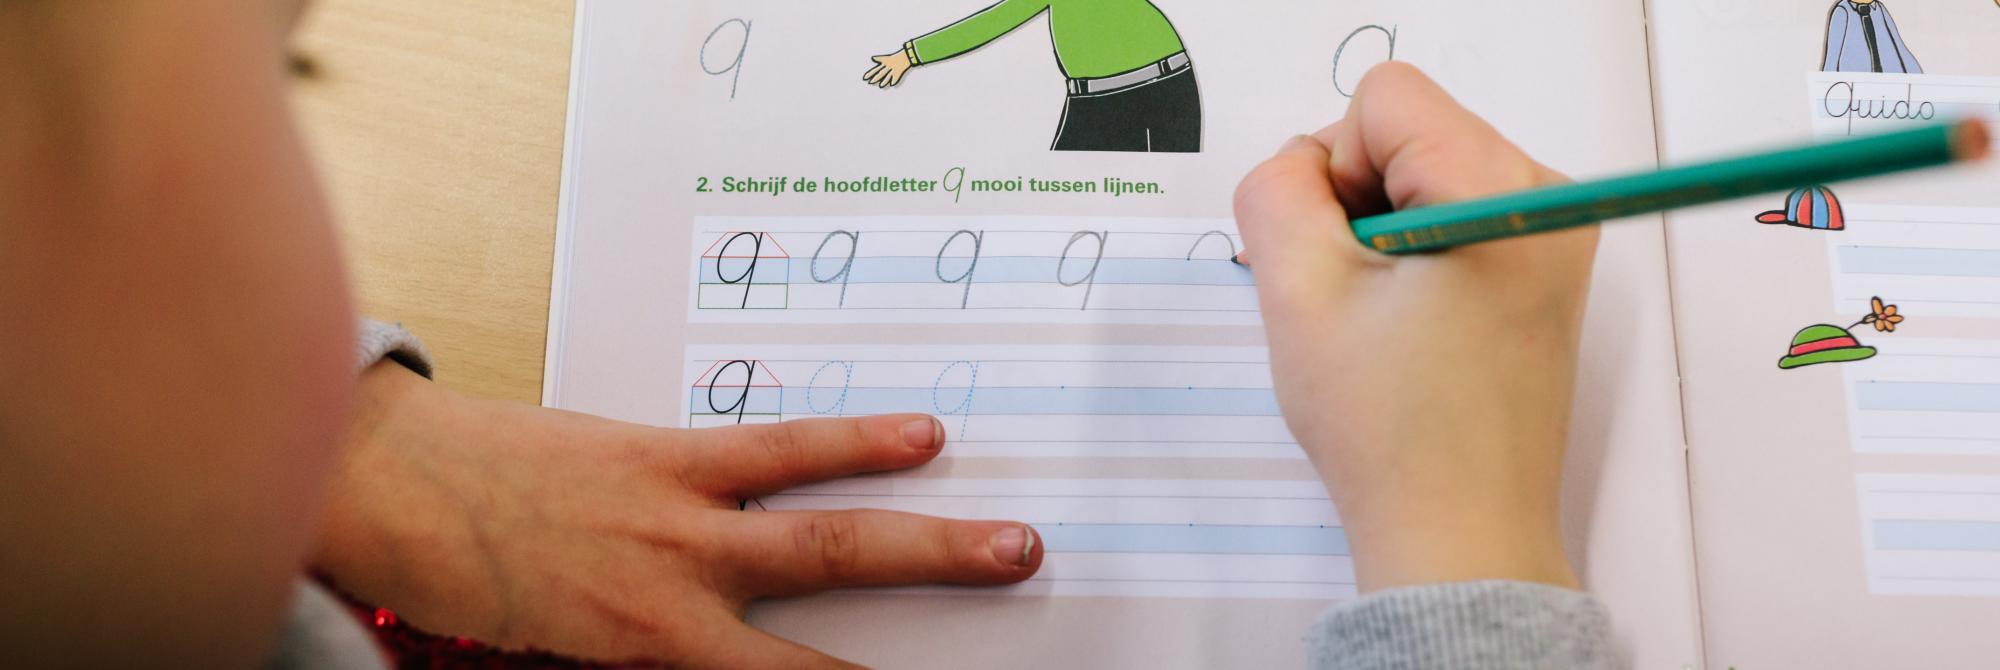 Kind oefent met schrijven van hoofdletter Q